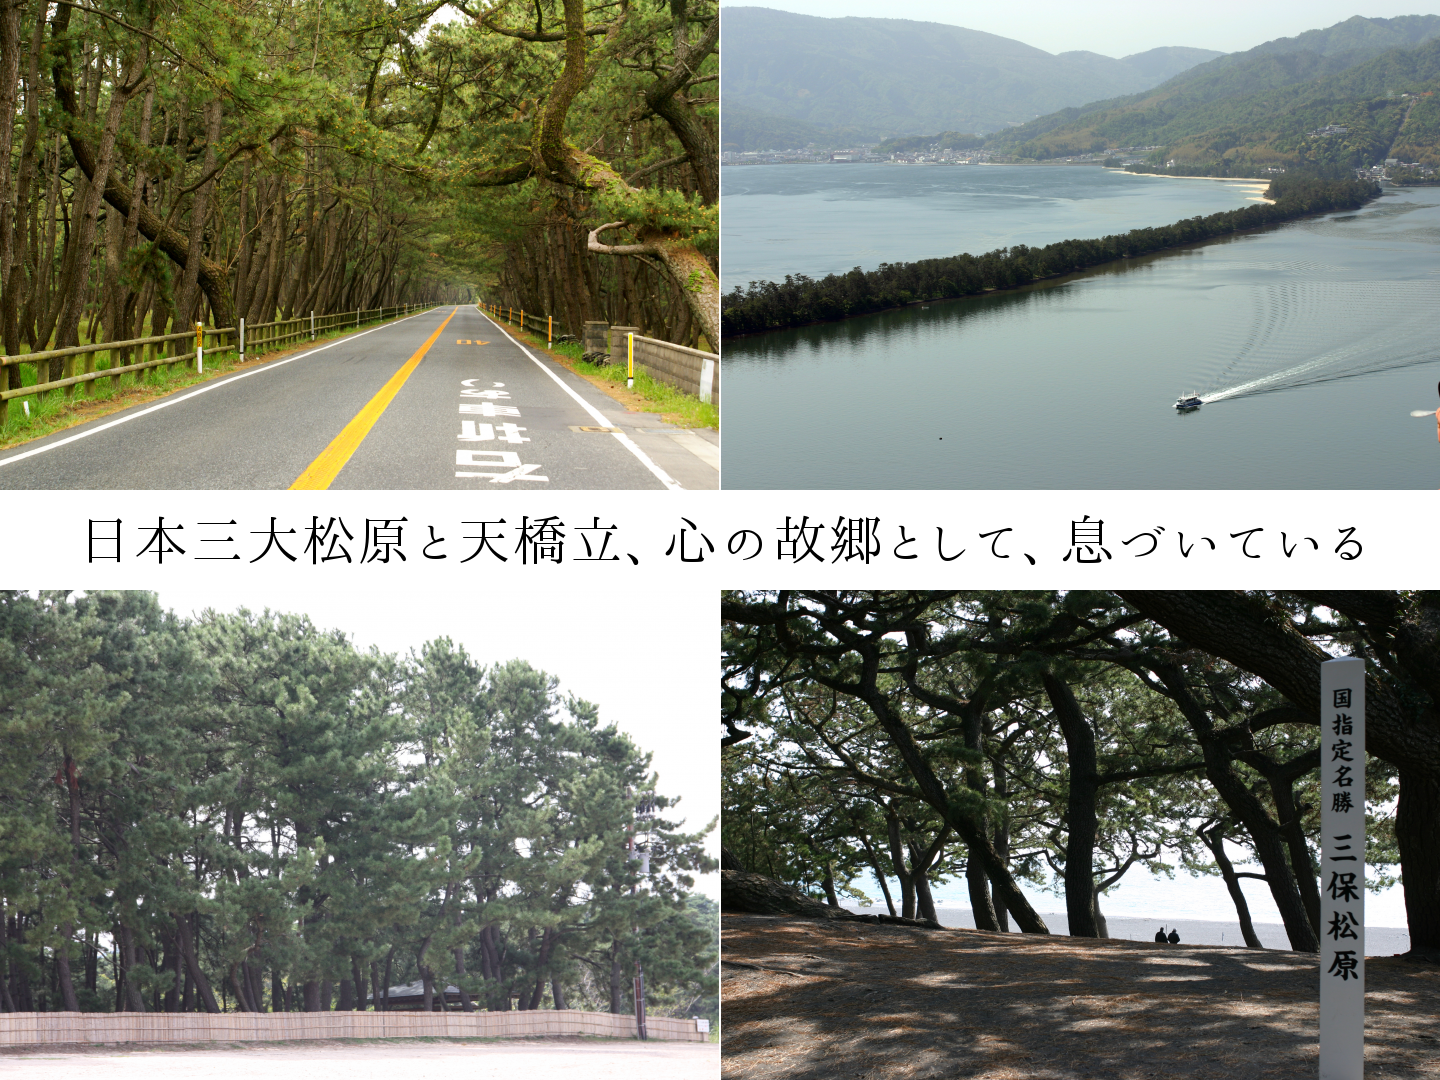 日本三大松原と天橋立、心の故郷として、息づいている